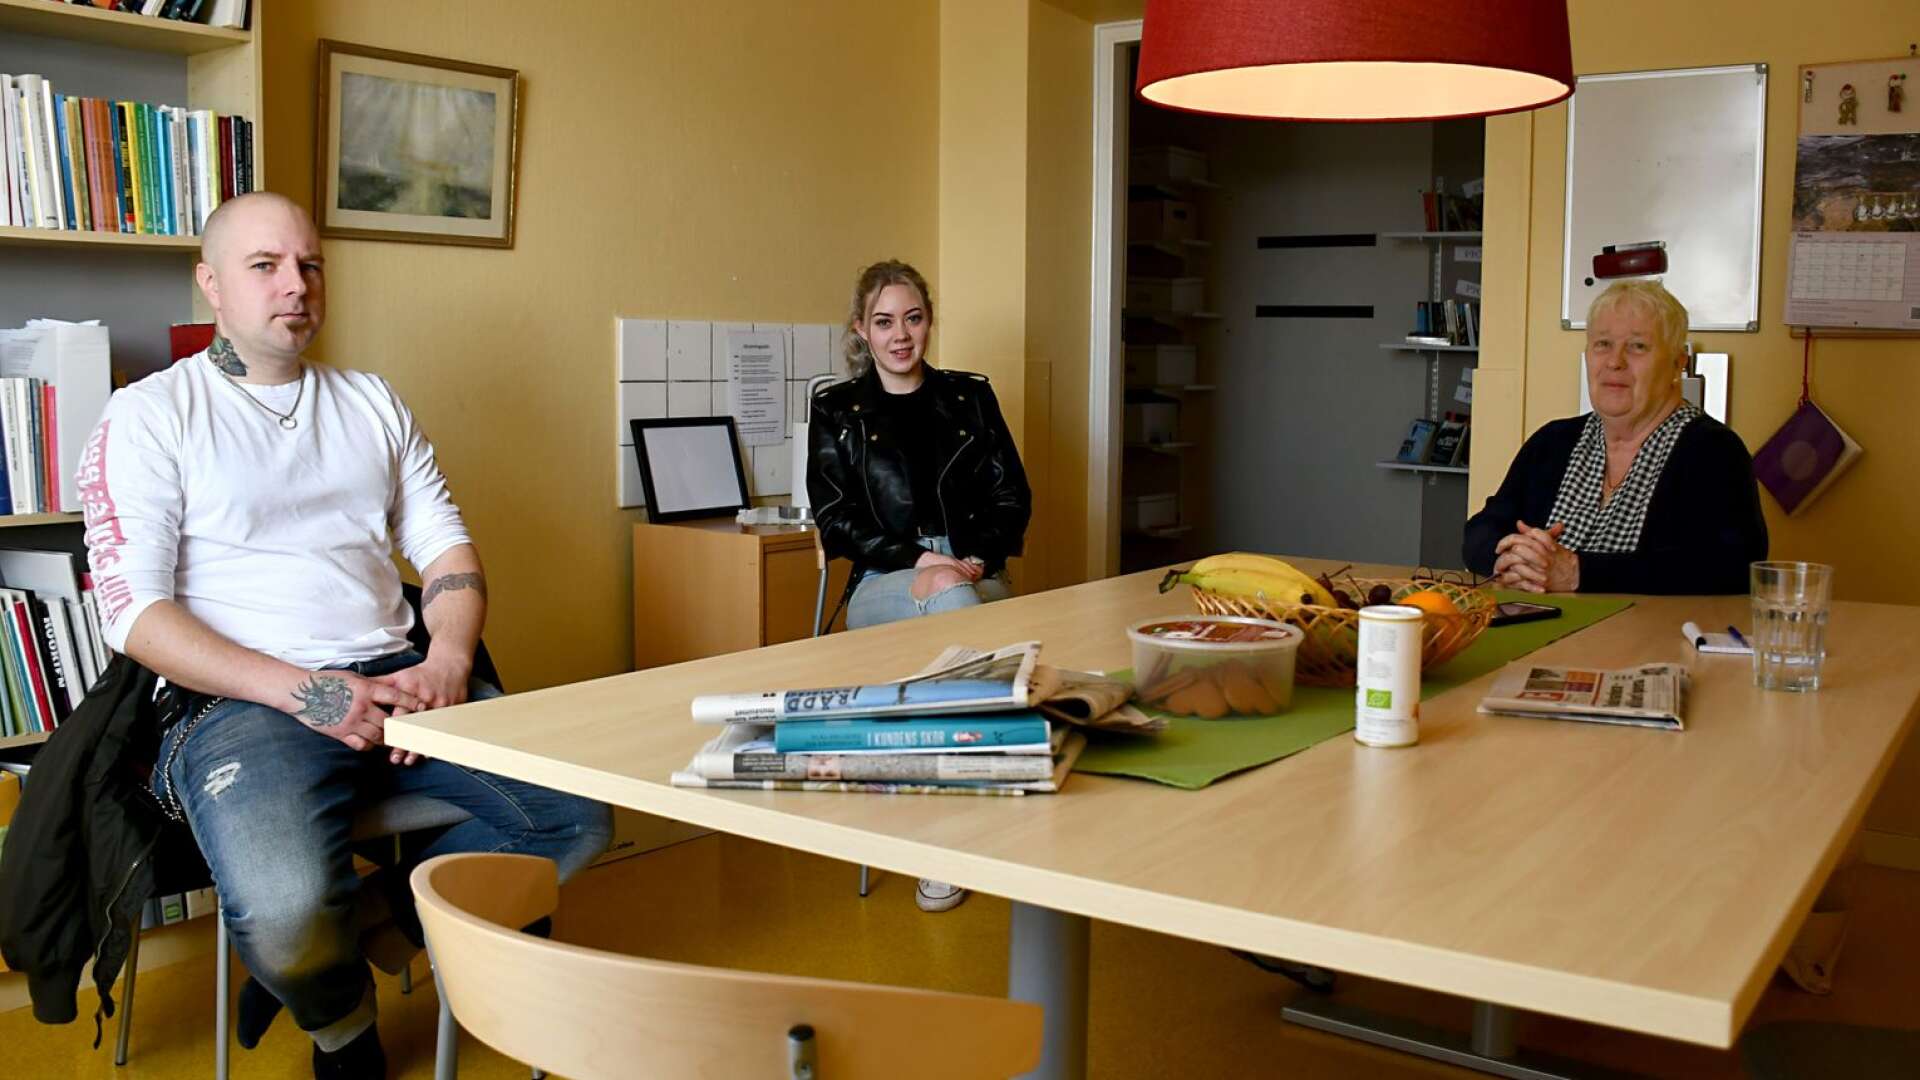 Deltagarna Fredrik Lundin och Melody Borg tillsammans med lärare Inga-Lill Junedahl slår ett slag för studier på folkhögskola. ”Här kan vi göra laborationer och gå lite annorlunda vägar så länge vi når till det givna målet”, berättar Fredrik.